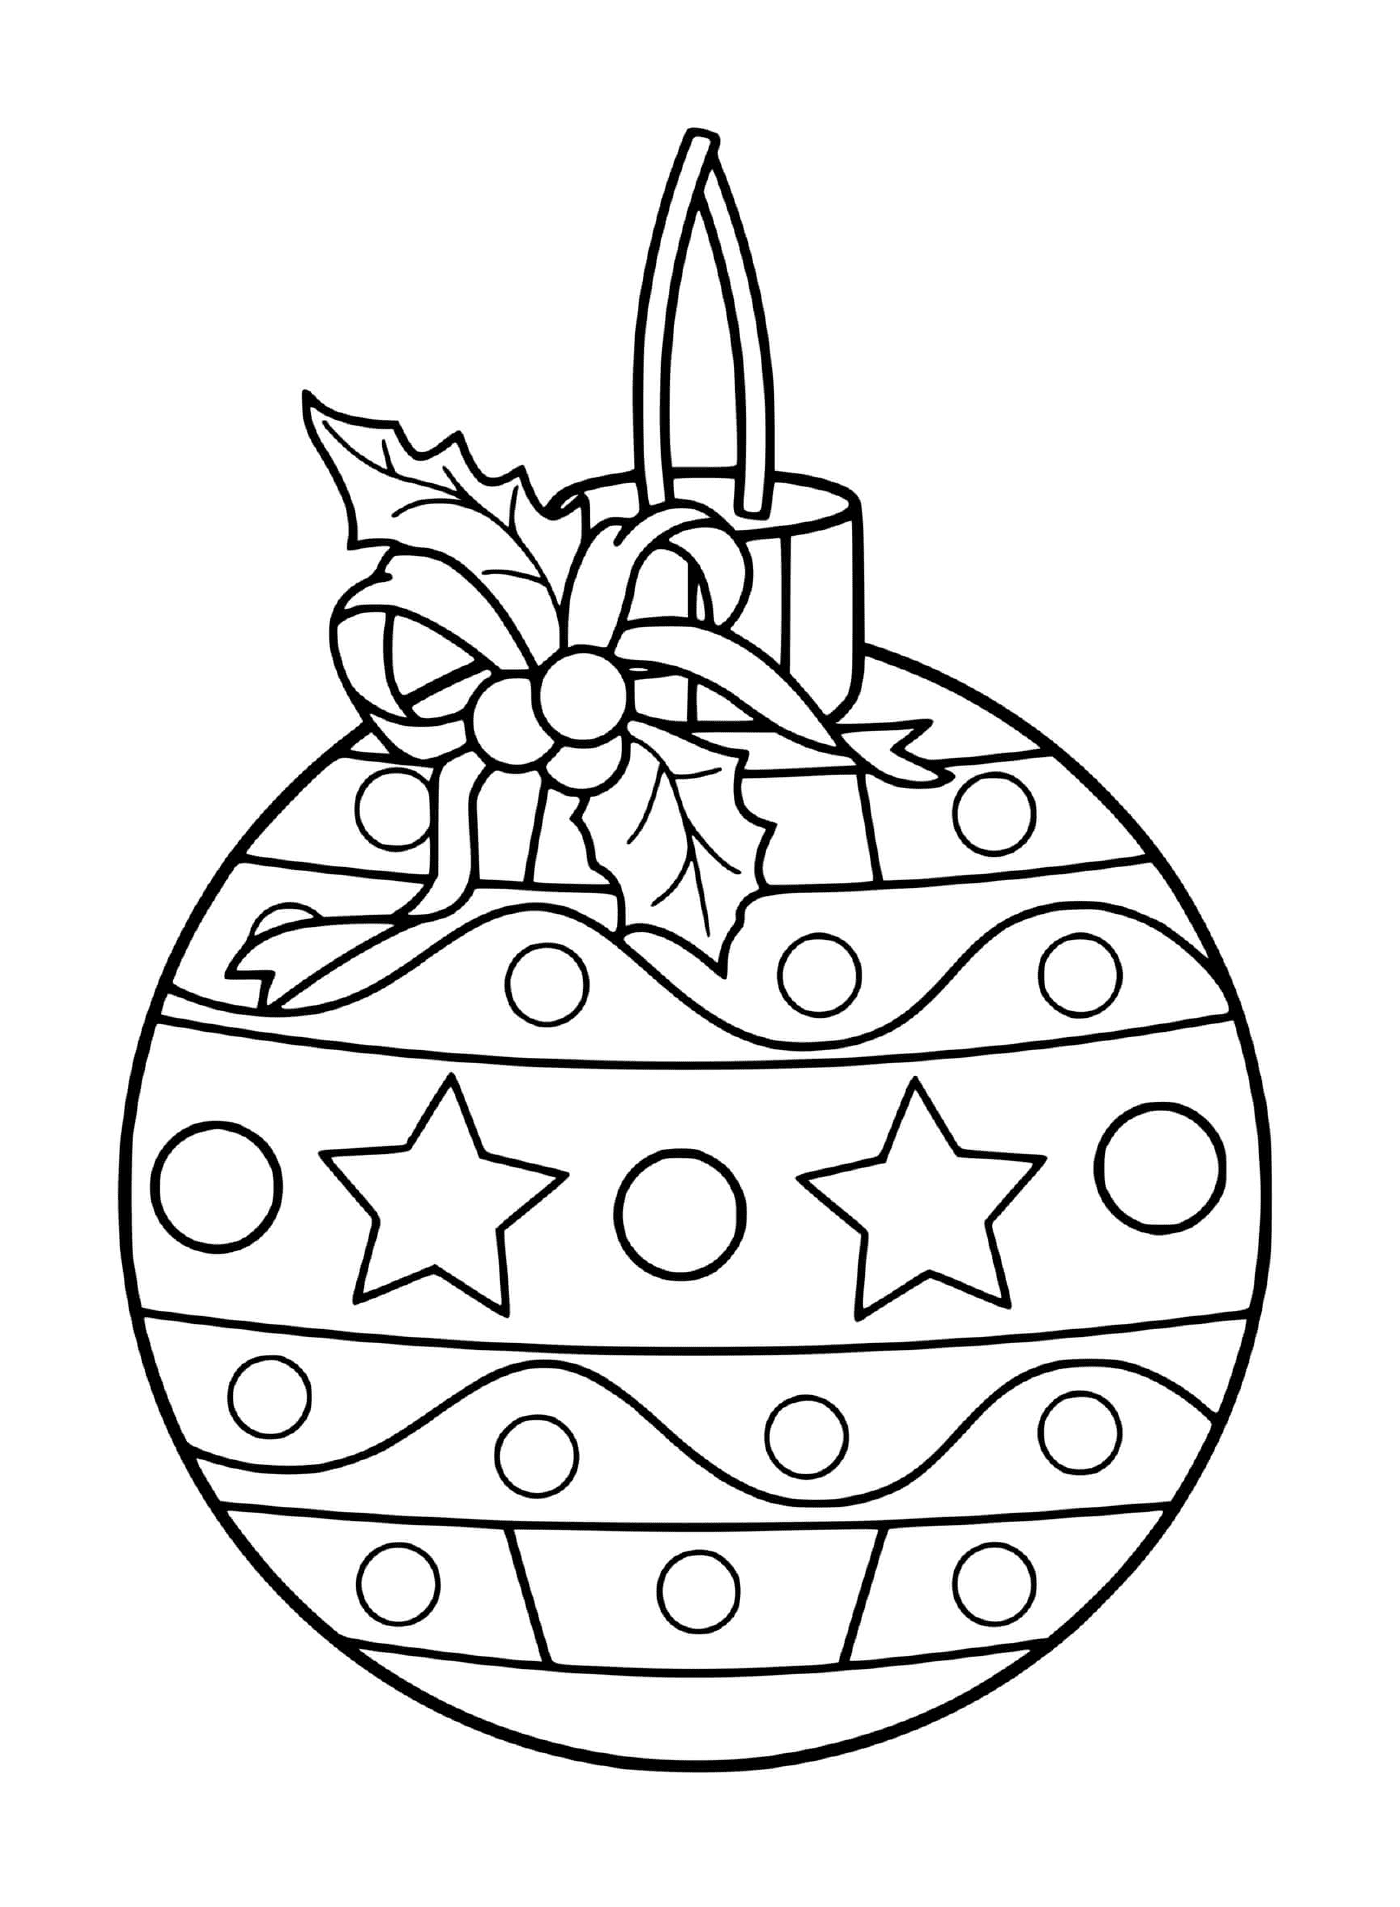  Ein schöner Weihnachtsball mit festlichen Dekorationen 